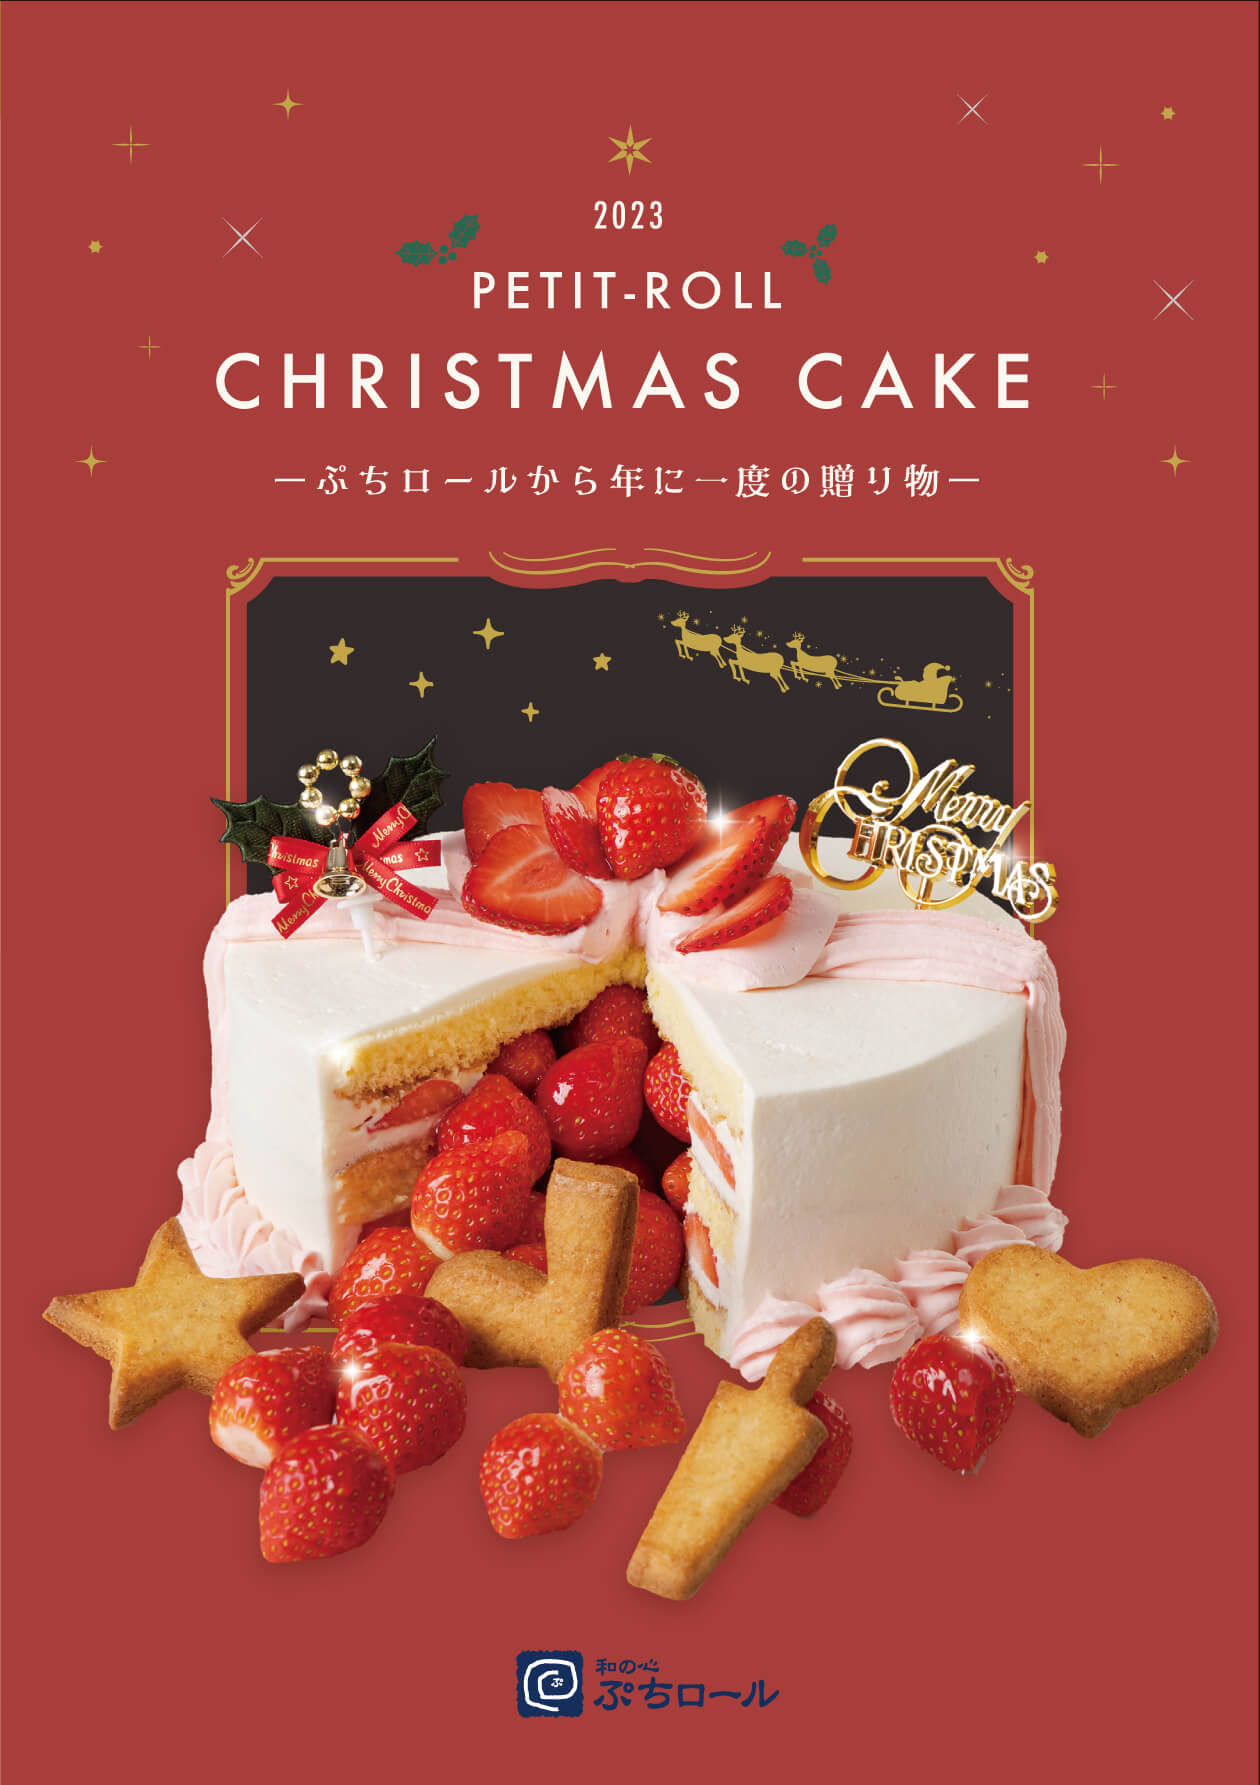 ぷちロールのクリスマスケーキ ネットで予約受付中 和の心 ぷちロール 富山県富山市根塚町